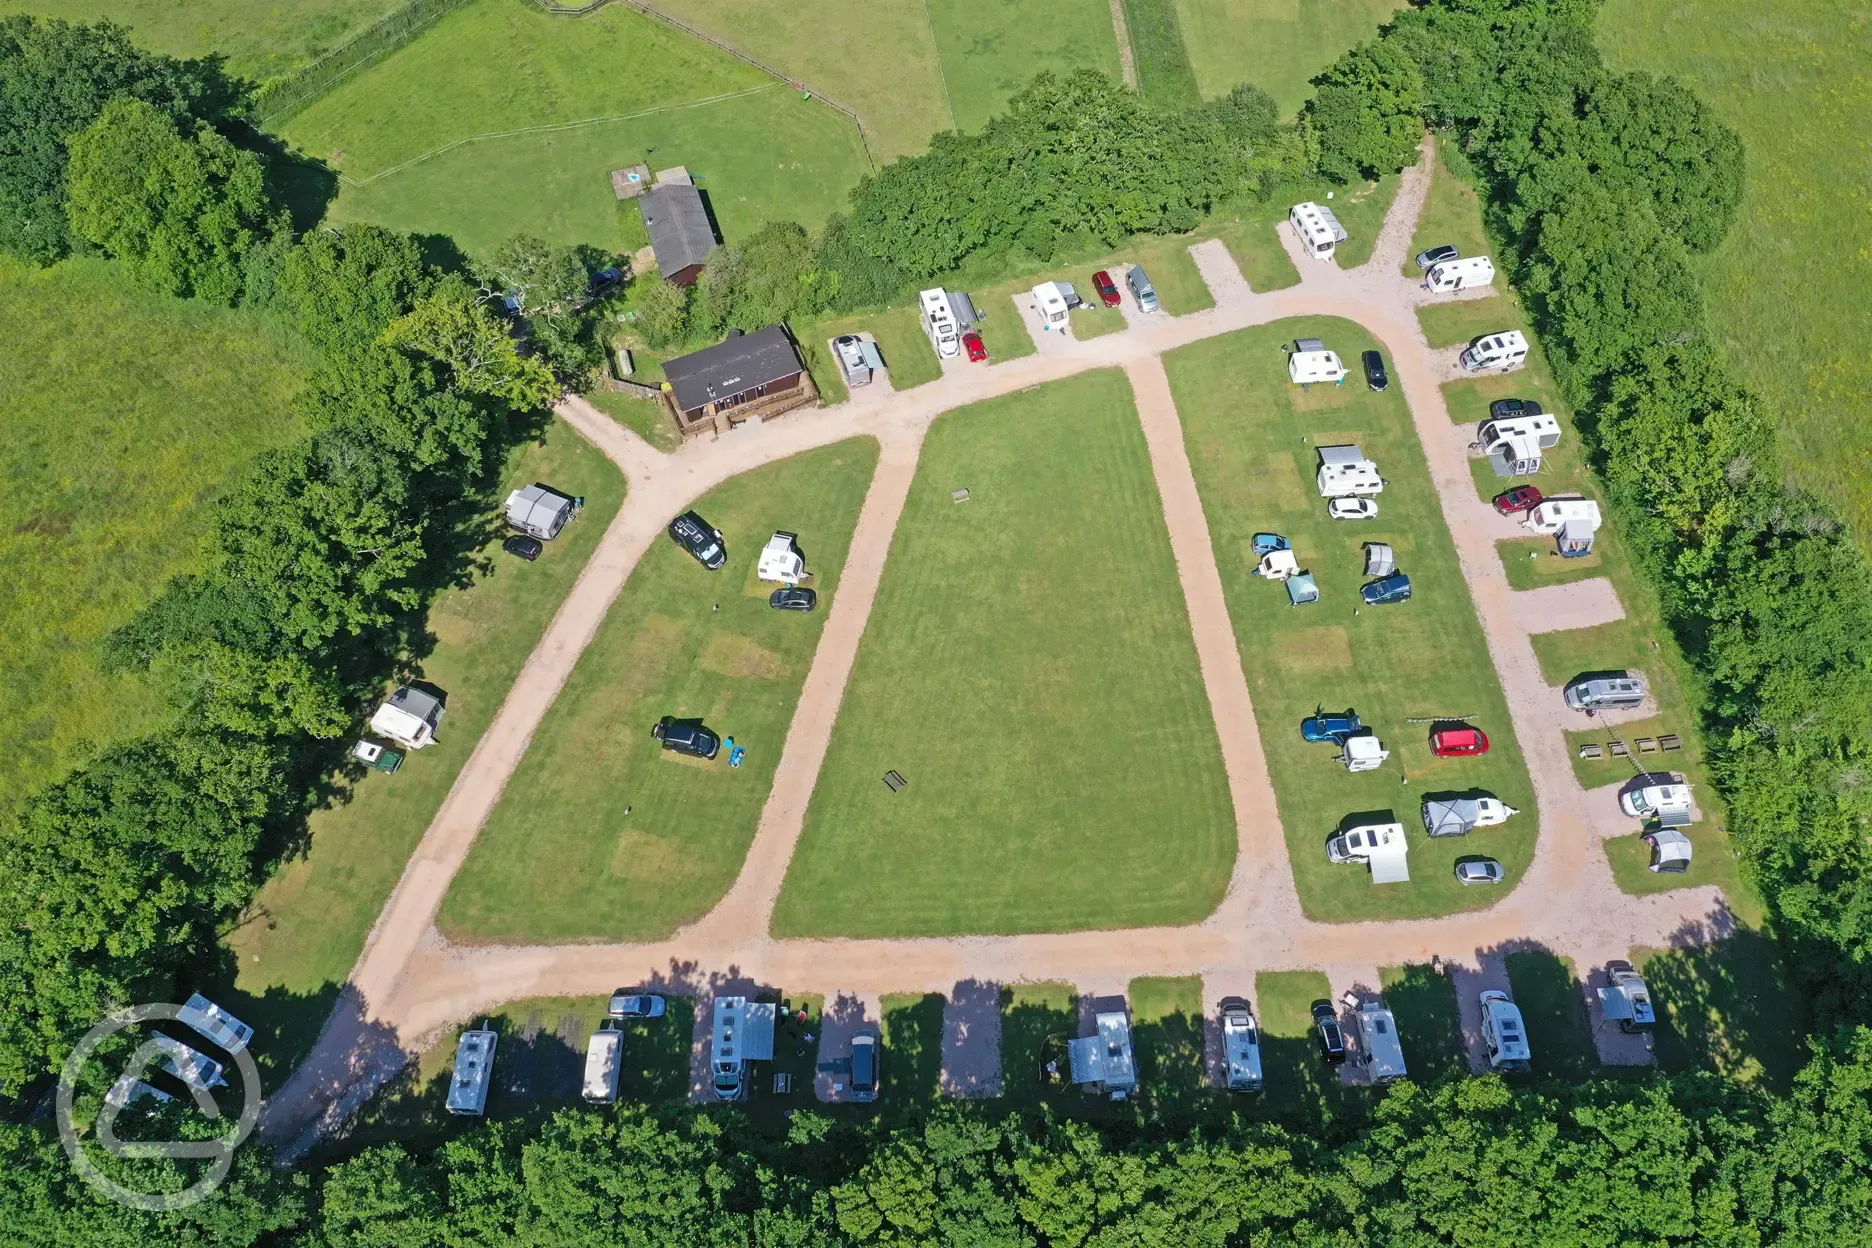 Campsite aerial